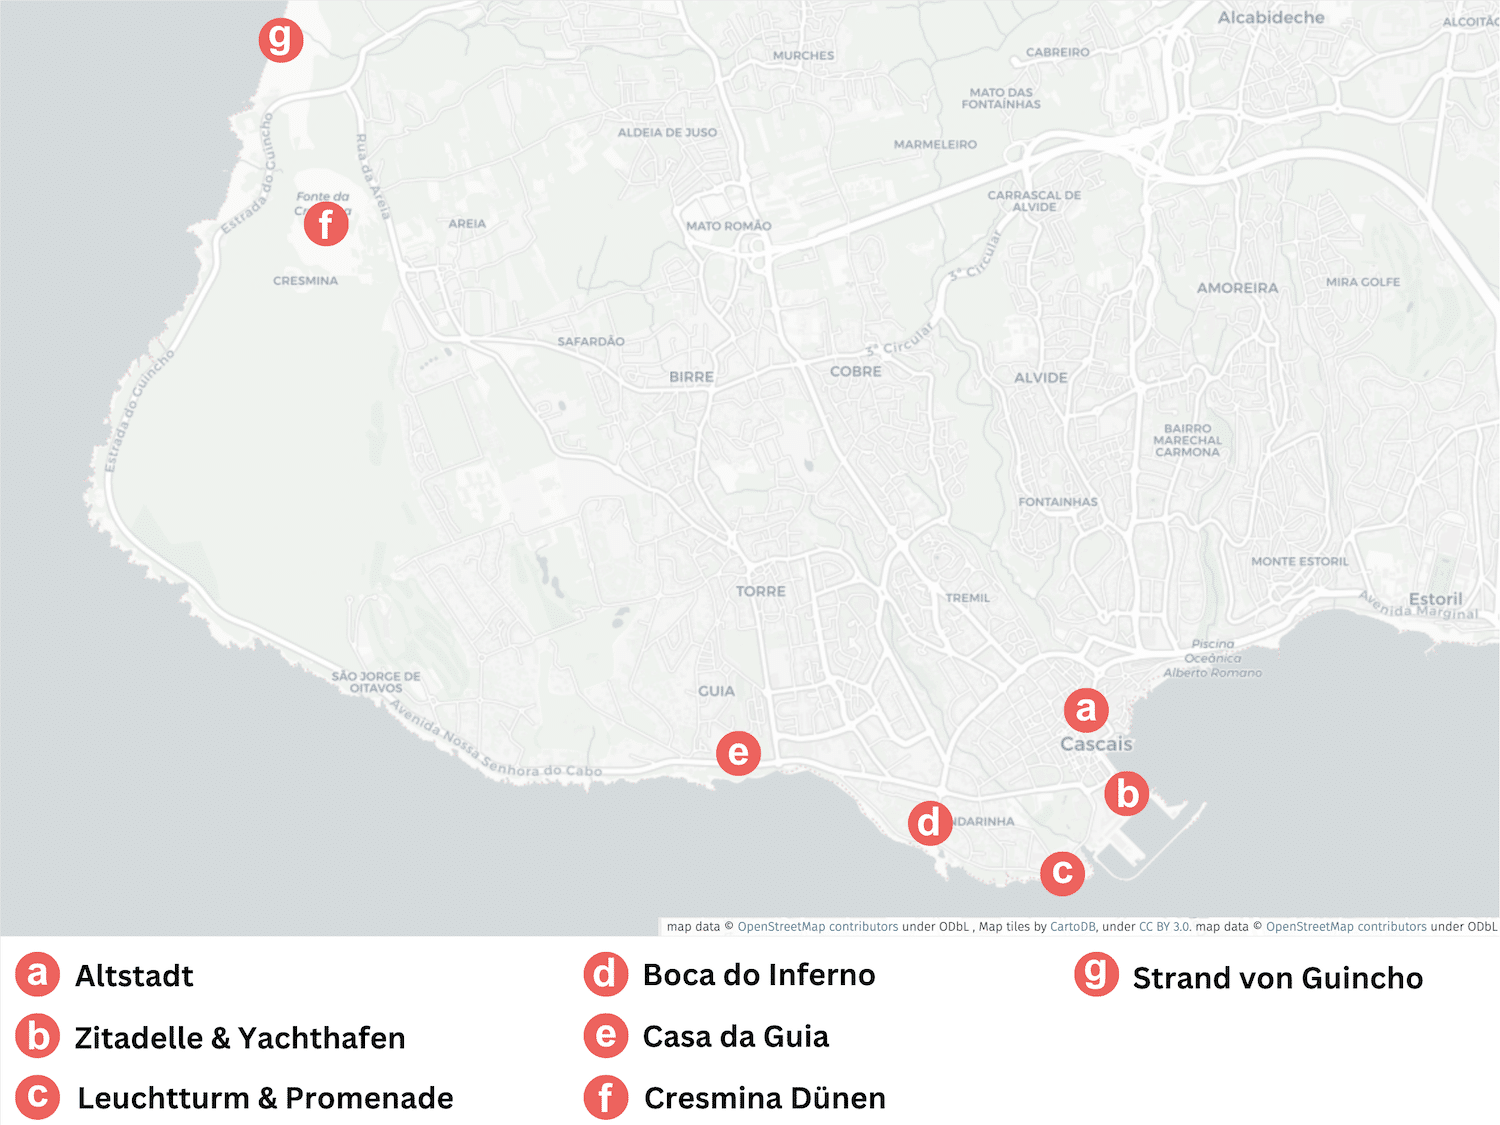 Karte von Cascais Portugal mit Markierungen der einzelnen Sehenswürdigkeiten